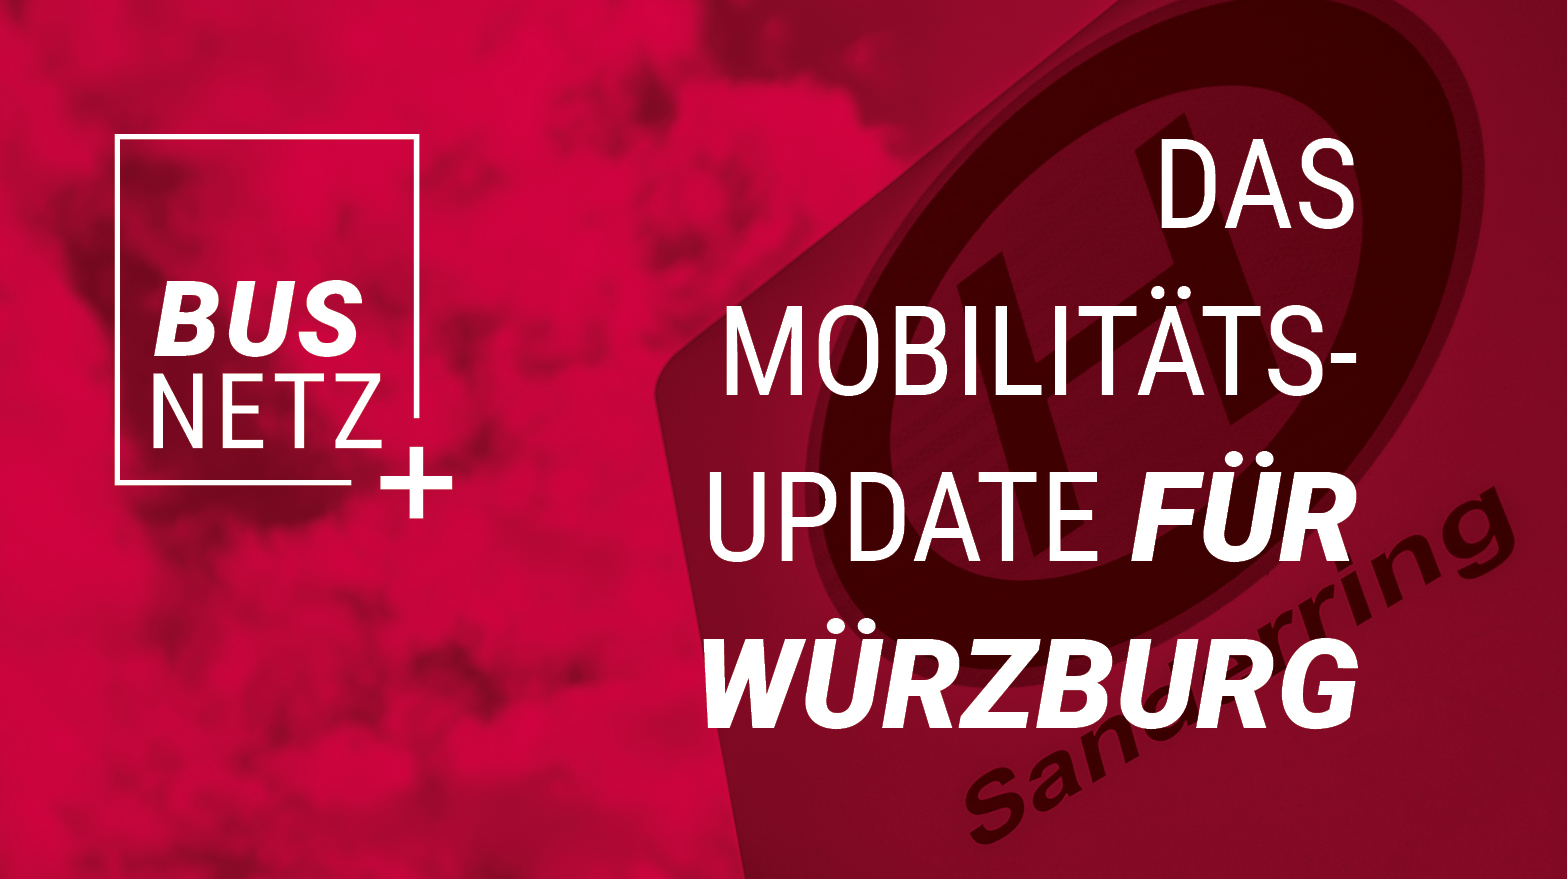 BUSNETZ+ Das Mobilitäts-Update für Würzburg